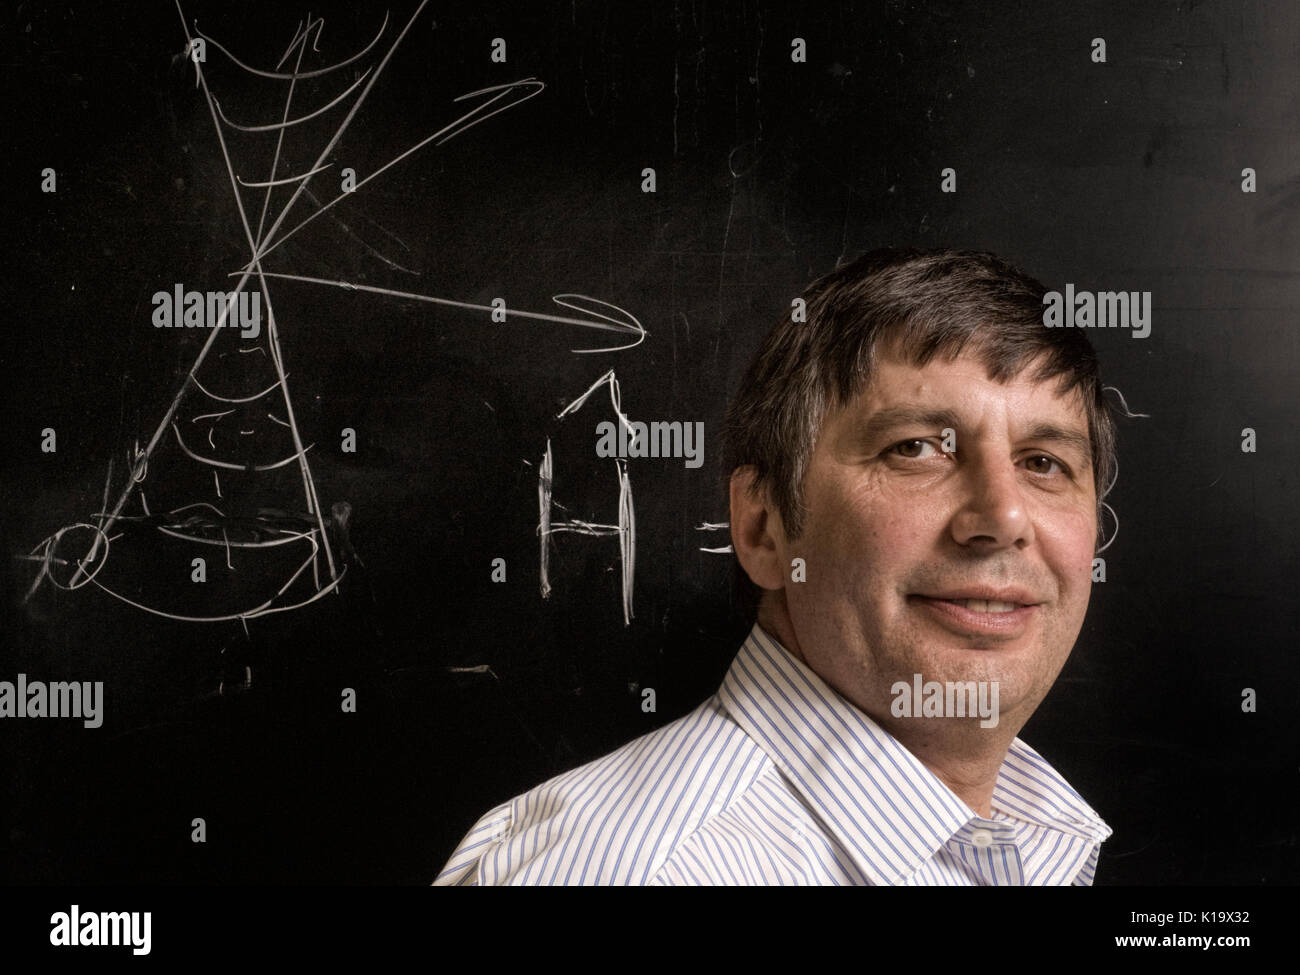 Retrato del Profesor André Geim Konstantin, quien ha recibido el Premio Nobel de Física 2010. Foto de stock